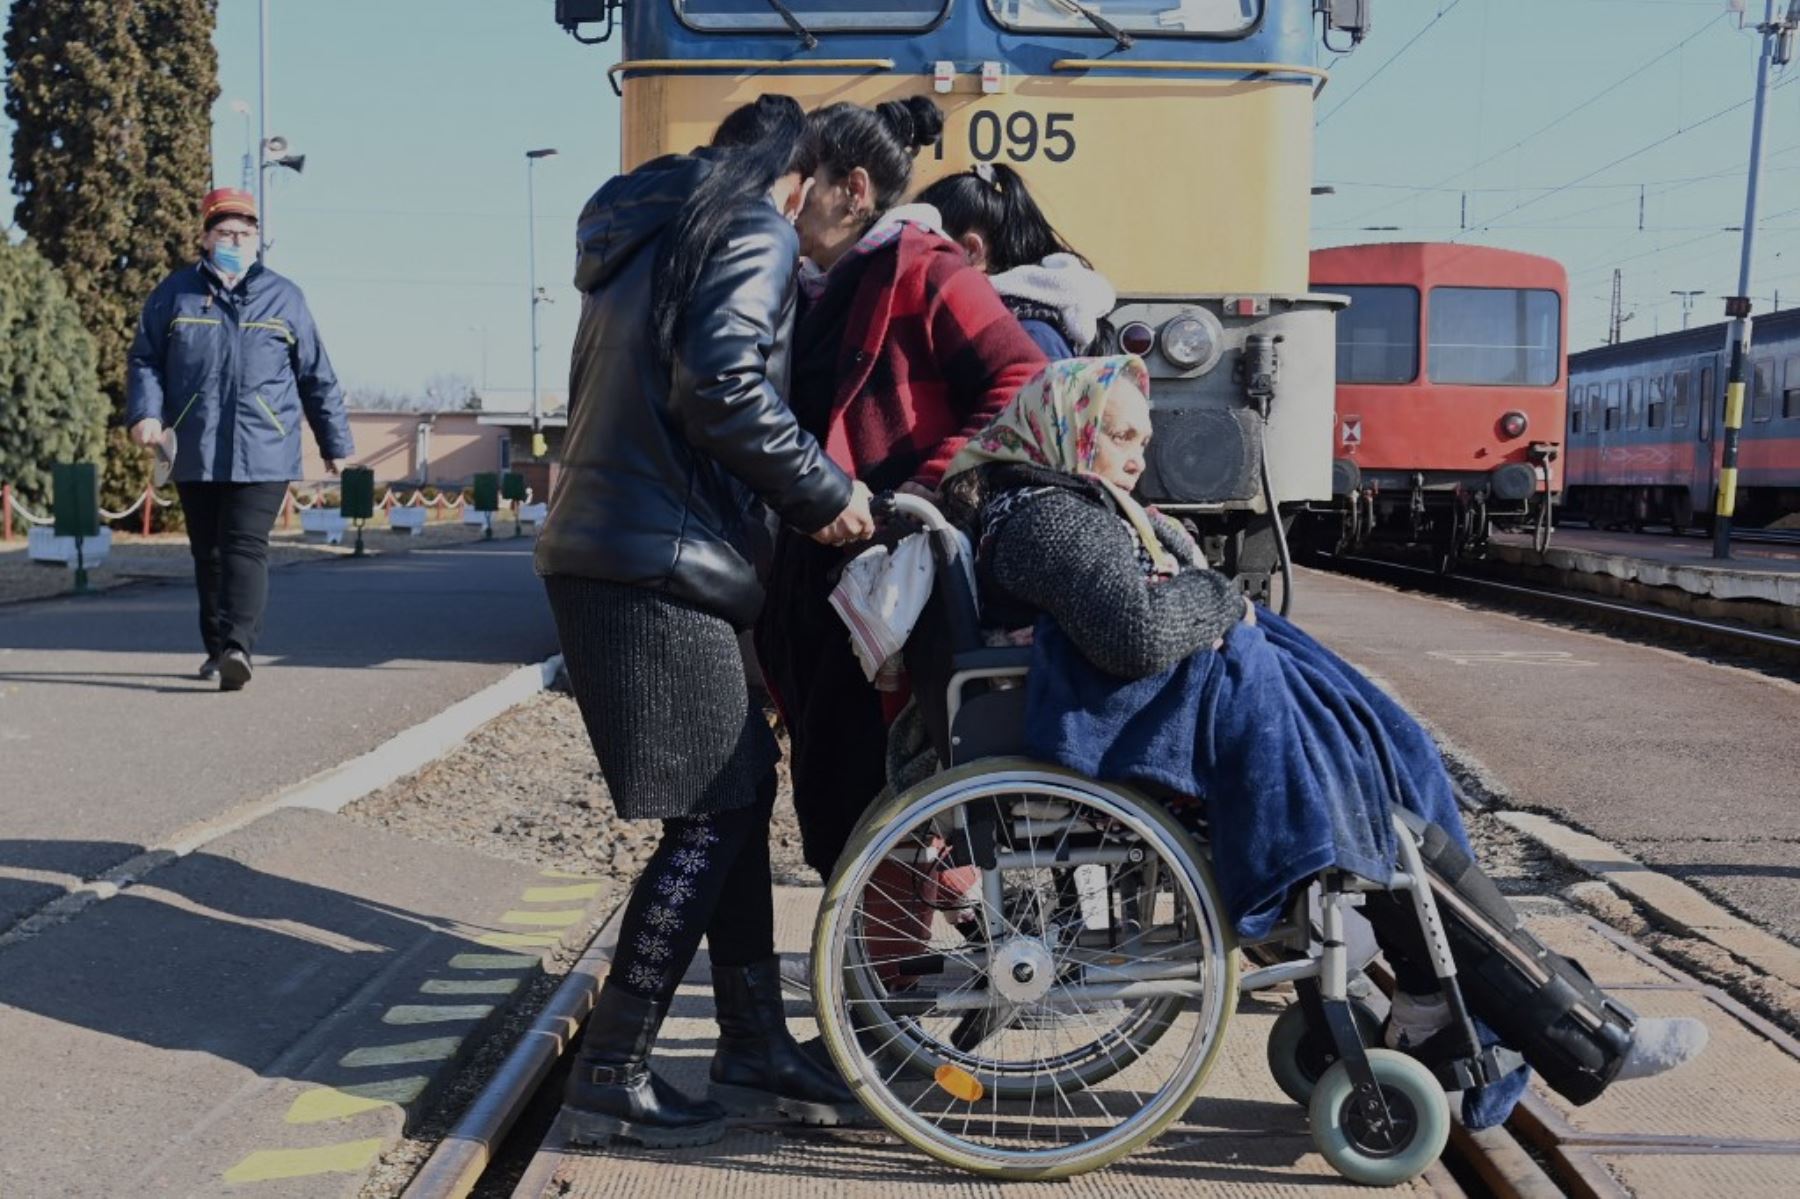 Refugiados ucranianos llegan desde su tierra natal a la estación de tren de Zahonyi, cerca de la frontera entre Hungría y Ucrania, el 27 de febrero de 2022. Foto: AFP